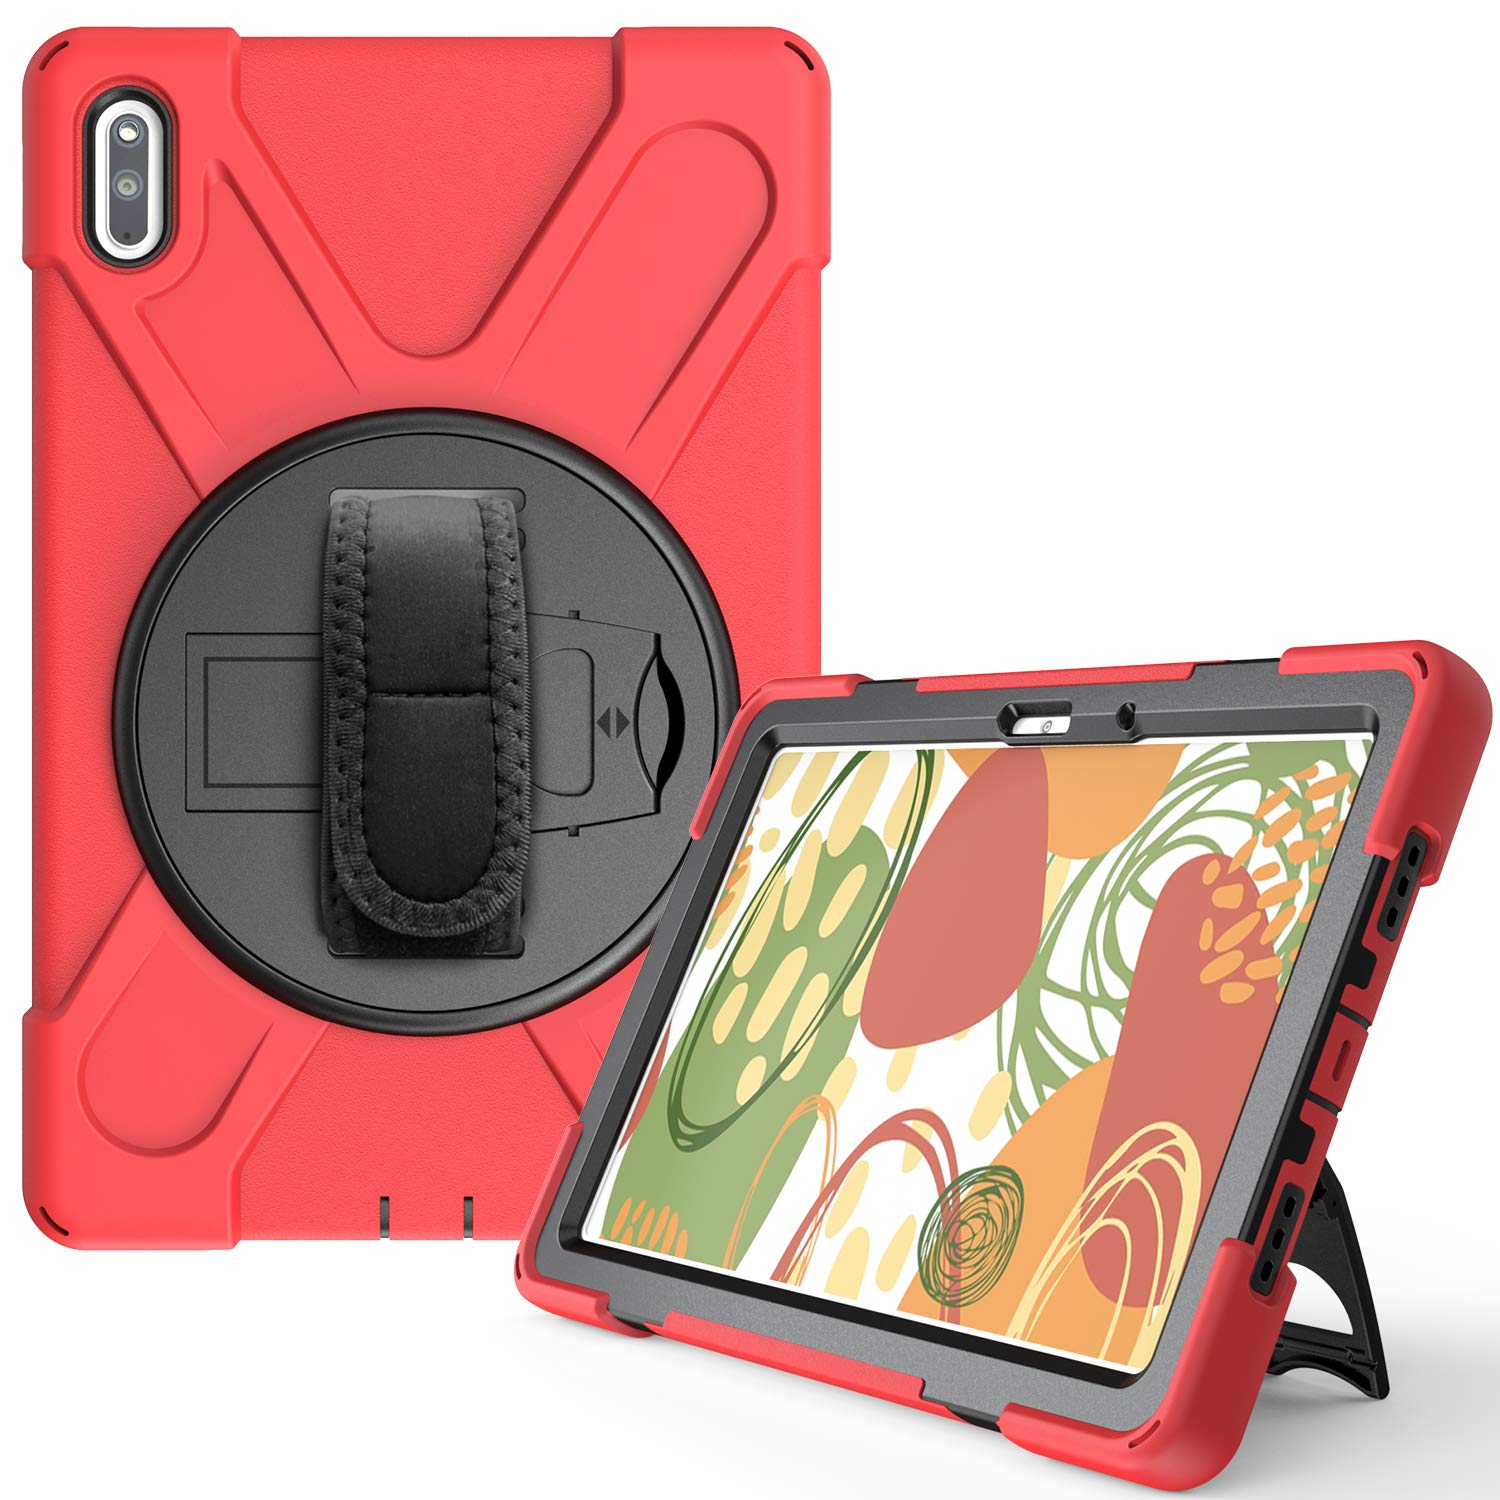 YGoal Hülle für Huawei MatePad 10.4 - [Handschlaufe] [Schultergurt] Robuste Schutzhülle mit Fallschutz Case Cover für Huawei MatePad 10.4 Zoll, Rot